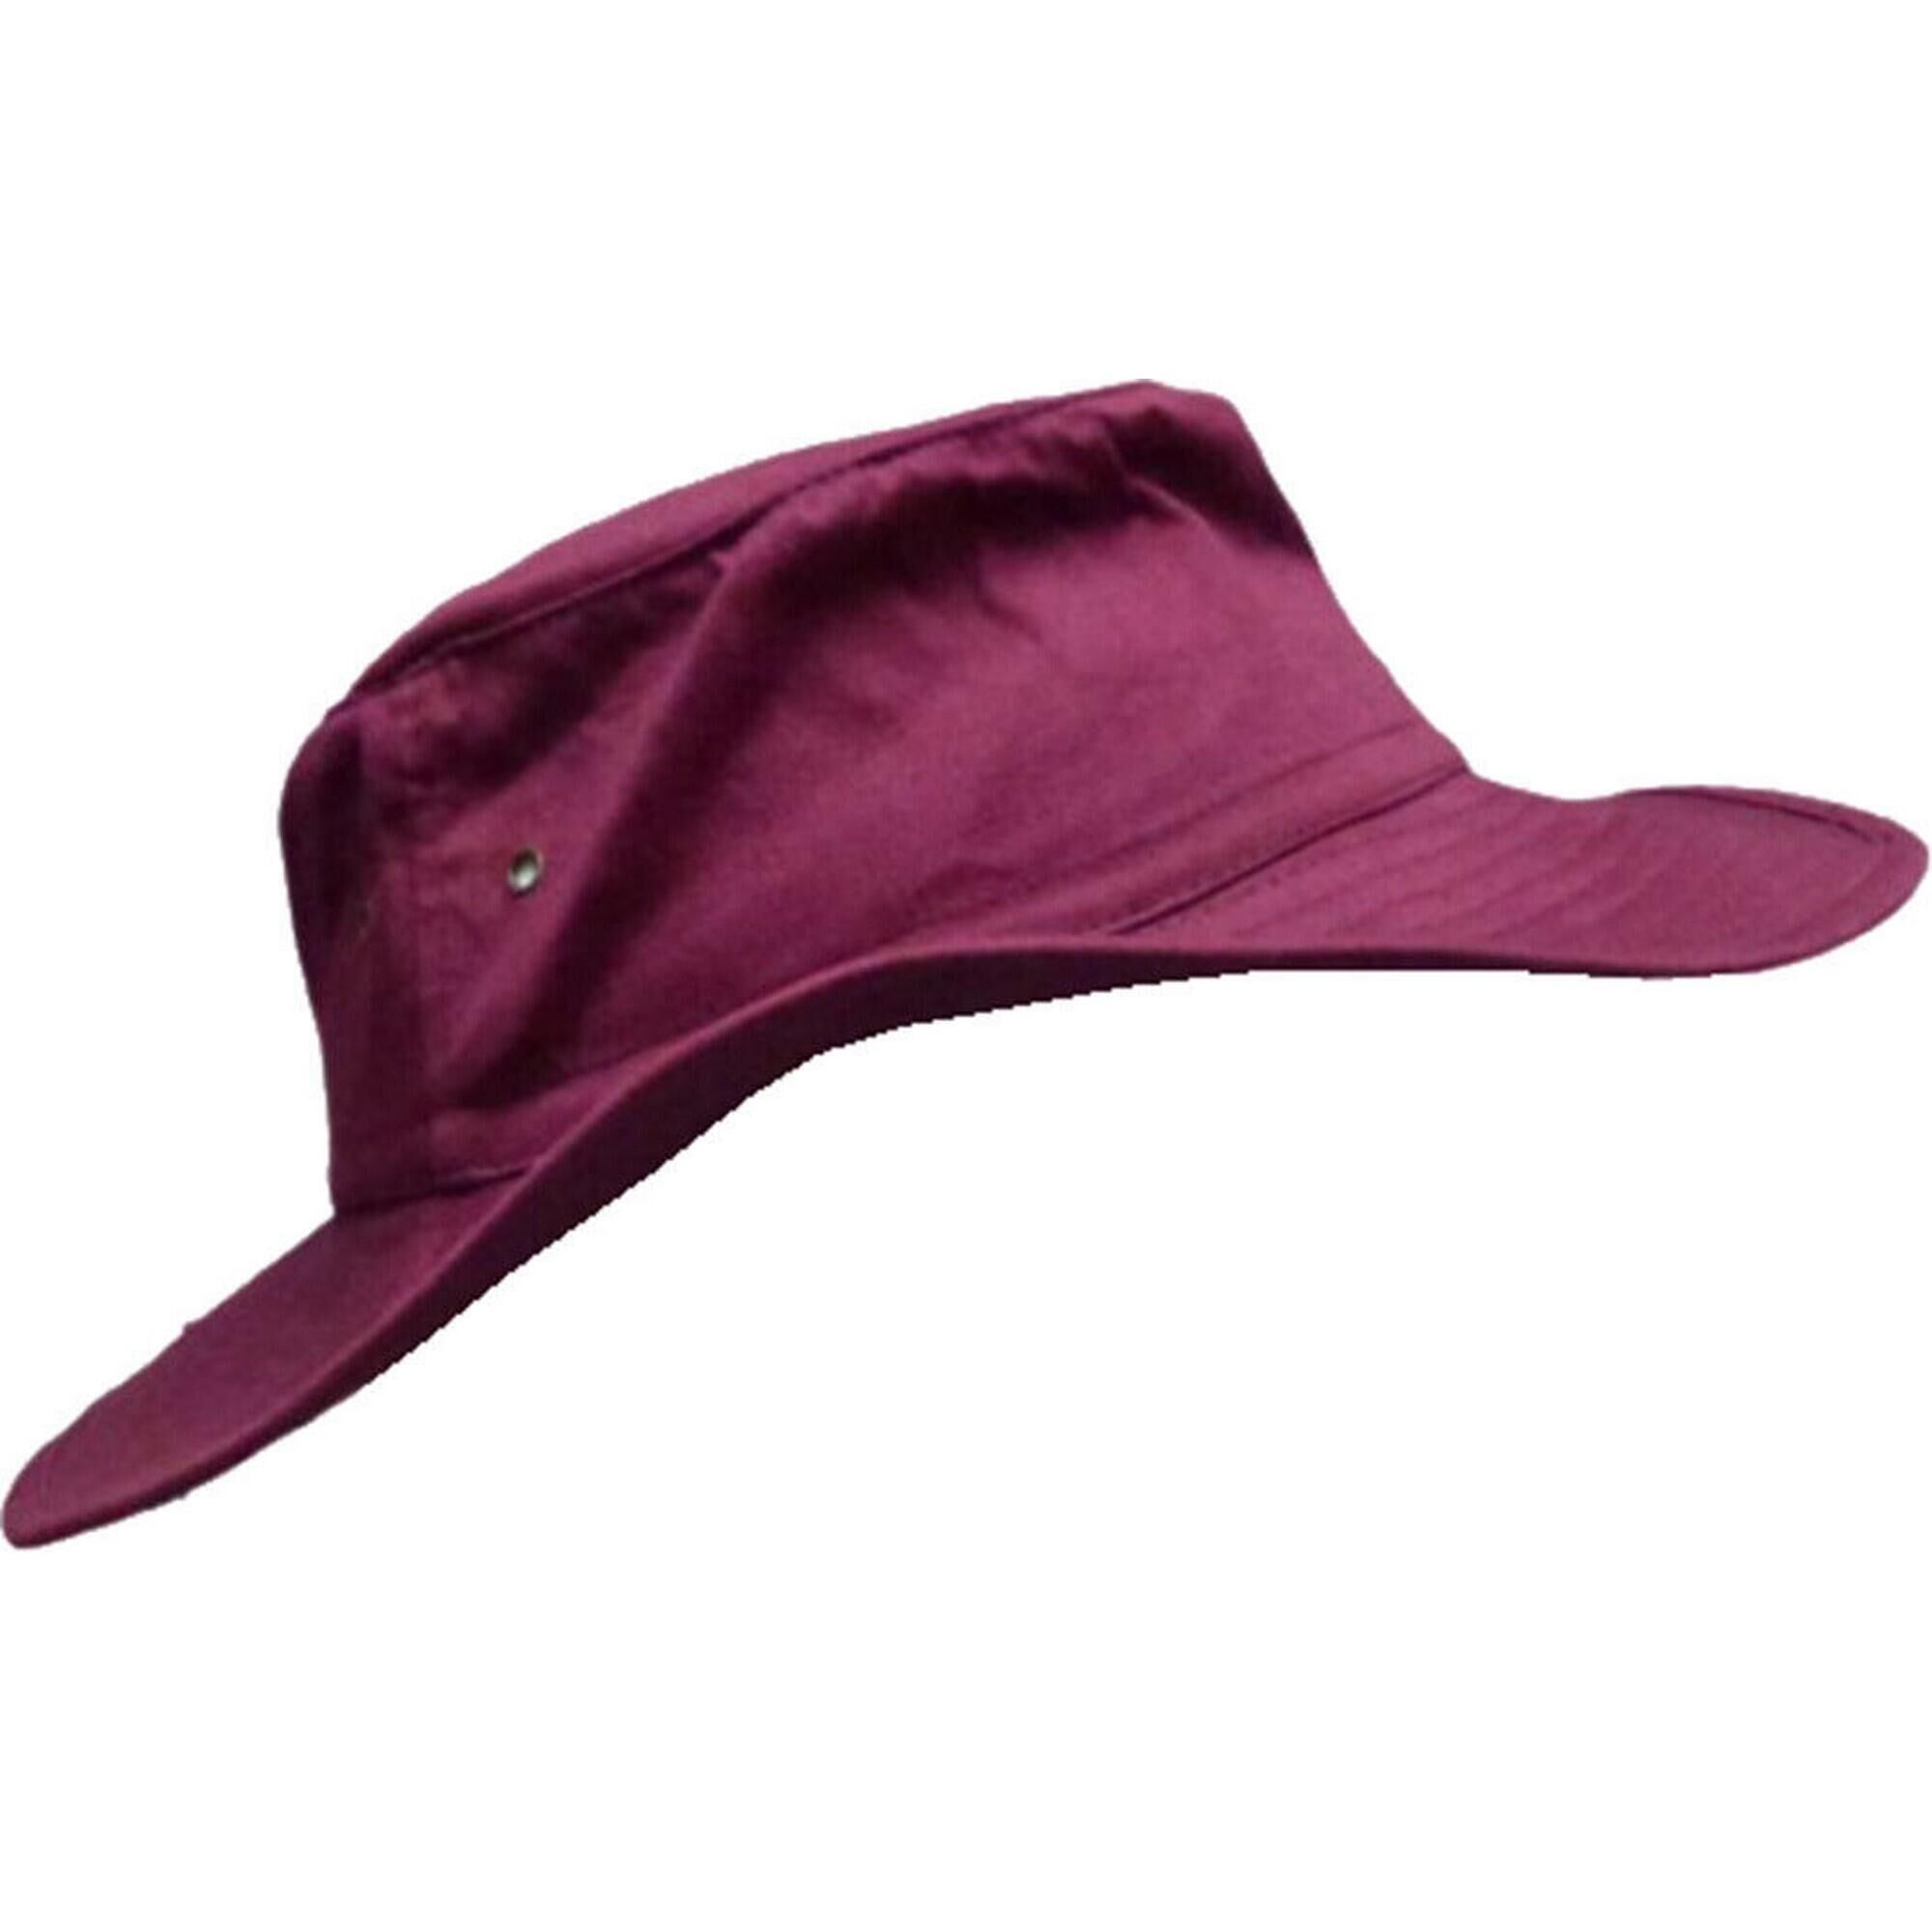 KOOKABURRA Wide Brim Cricket Bucket Hat (Maroon)